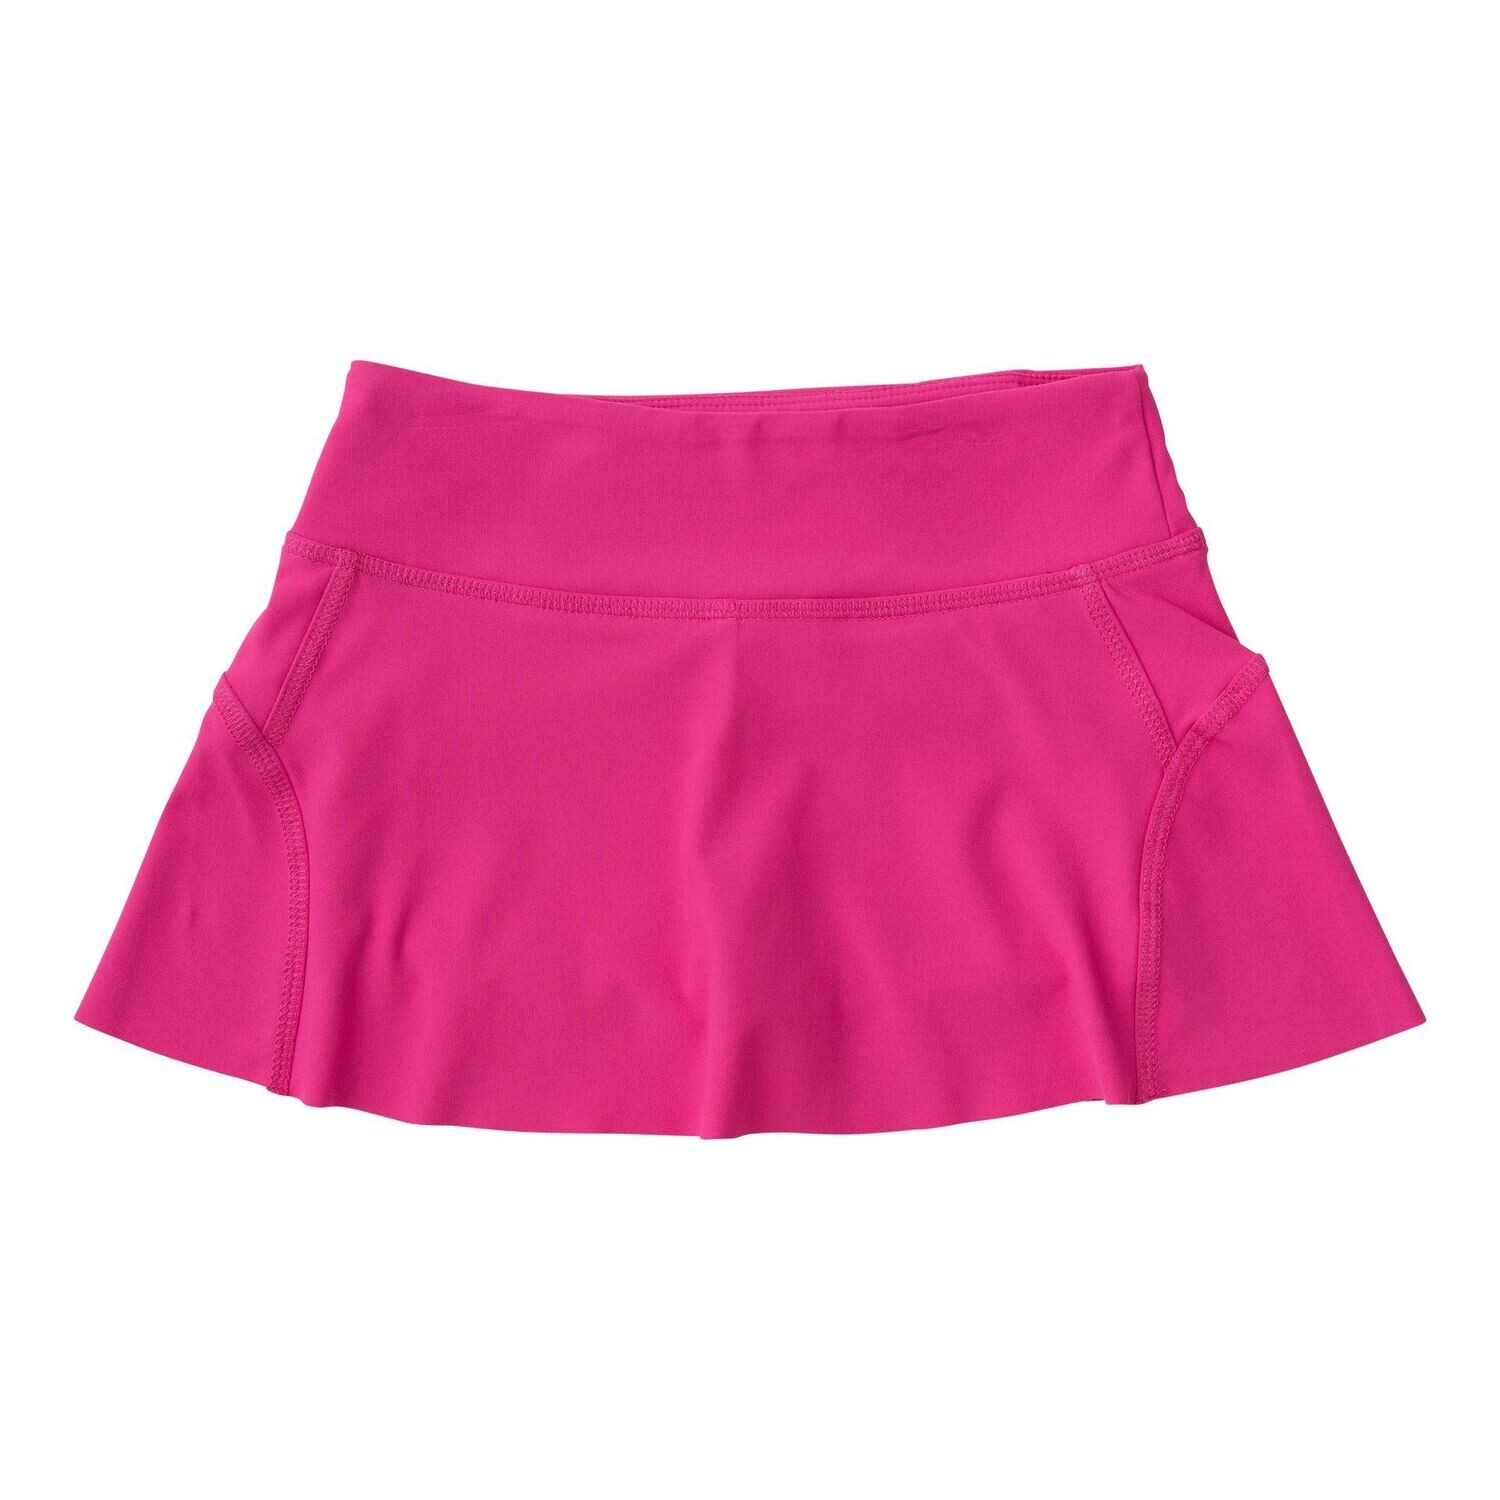 Tennis Twirl Skort-Cheeky Pink, Size: 2T